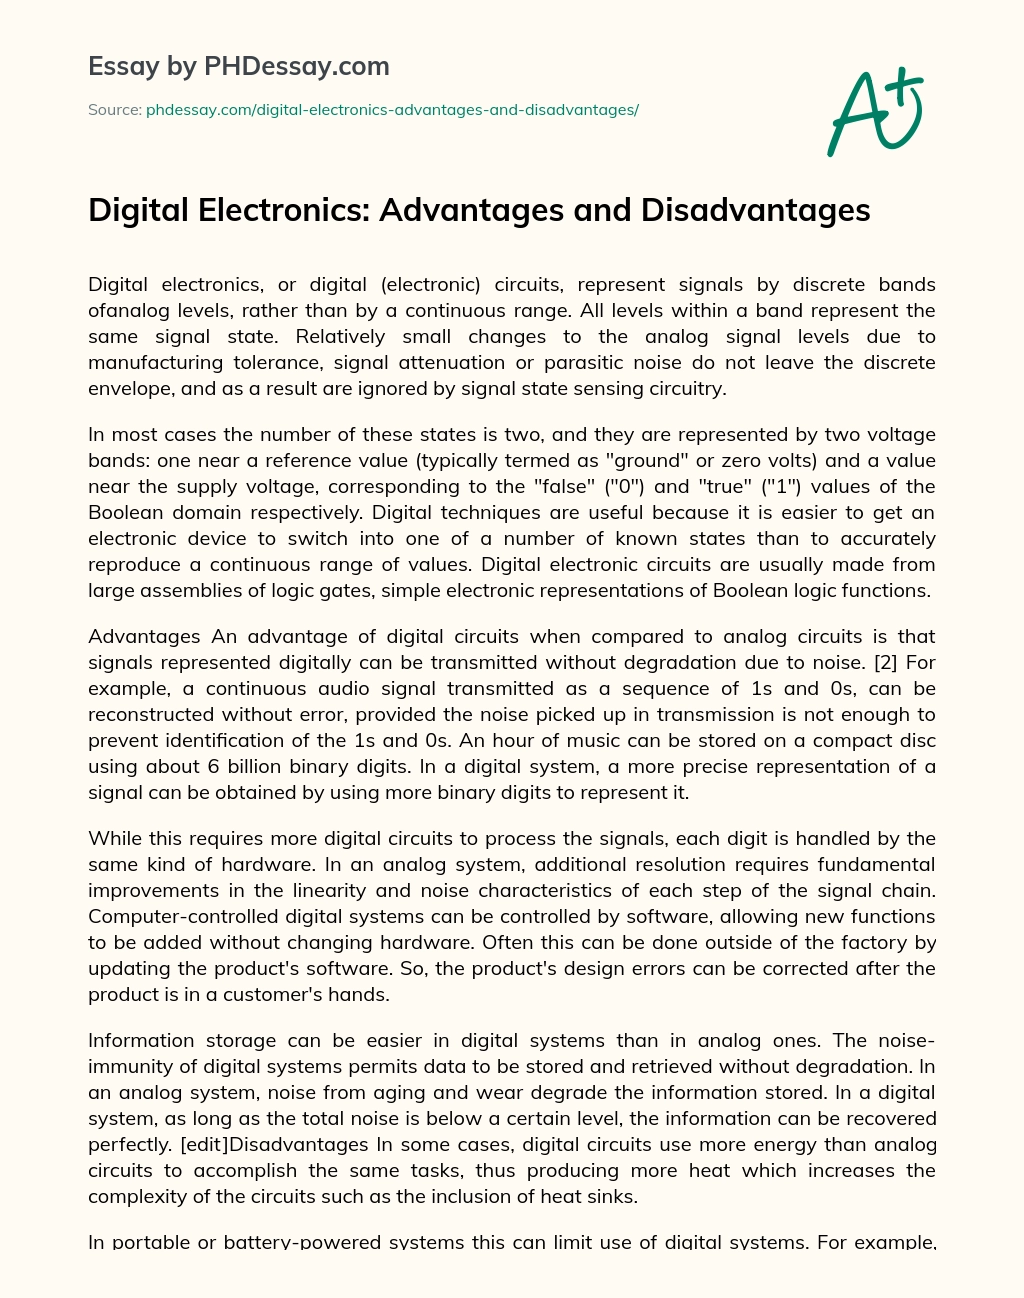 Digital Electronics: Advantages and Disadvantages essay